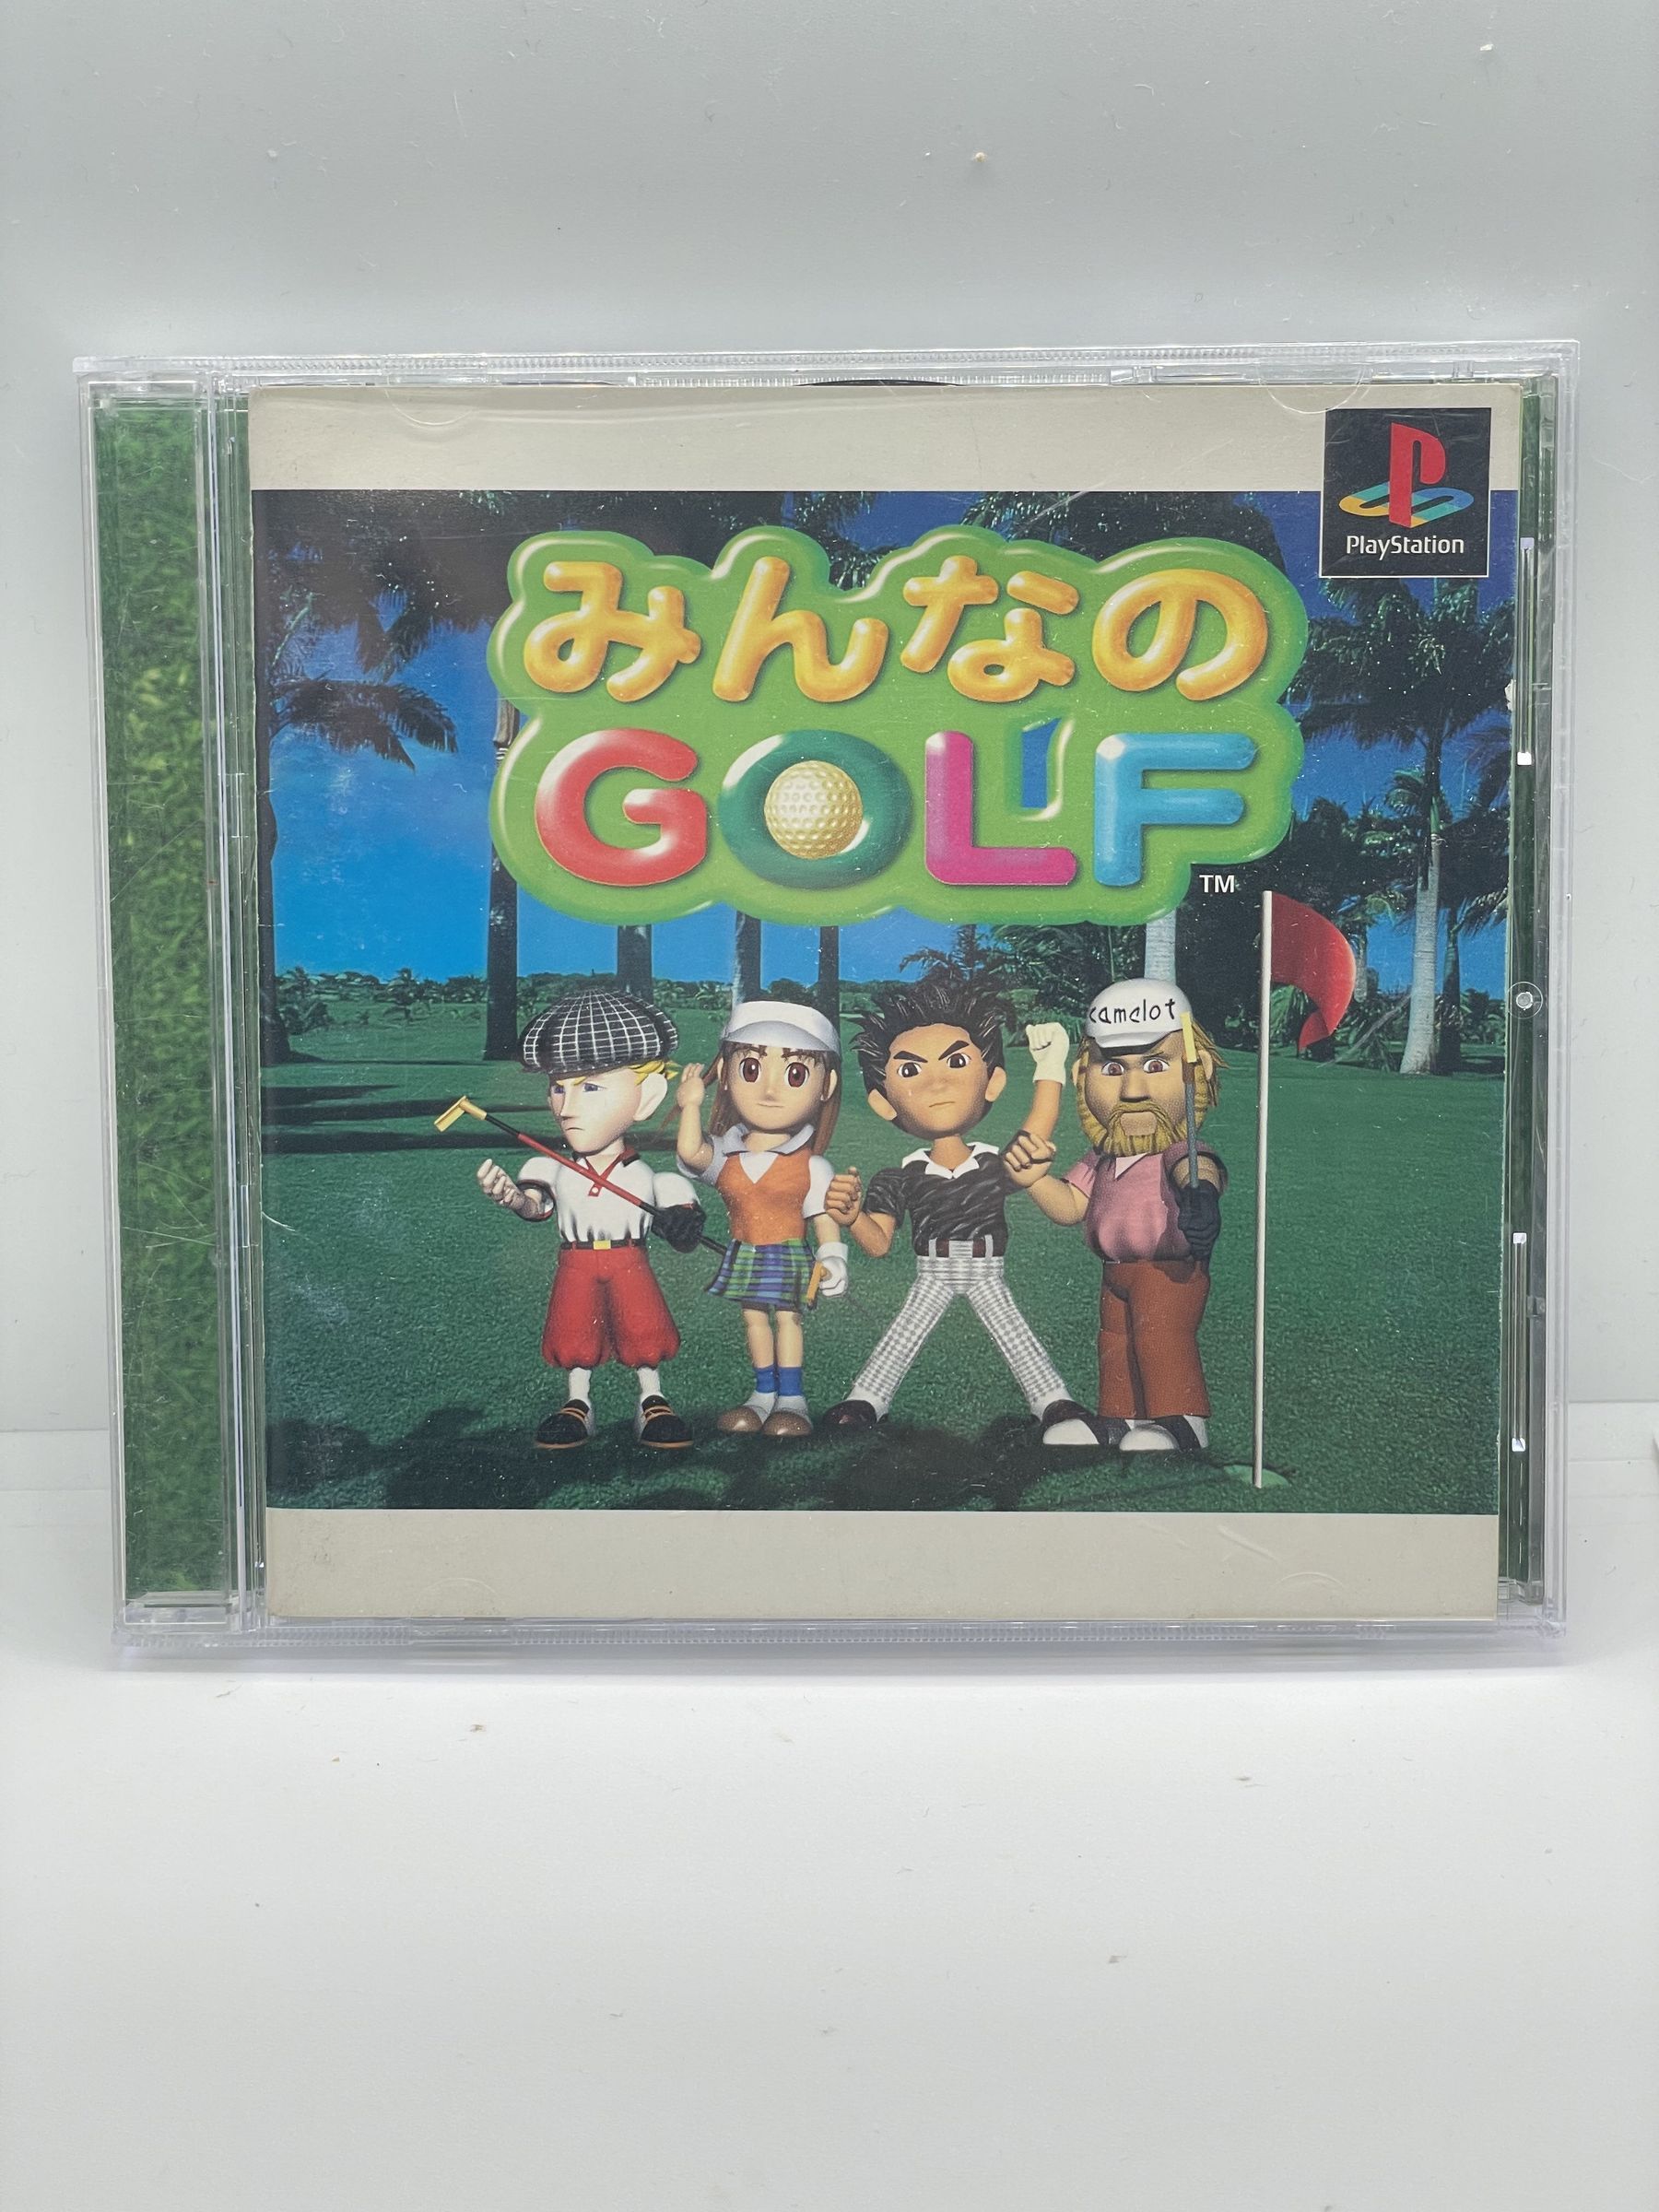 Minna no Golf PS1 NTSC-J PSX